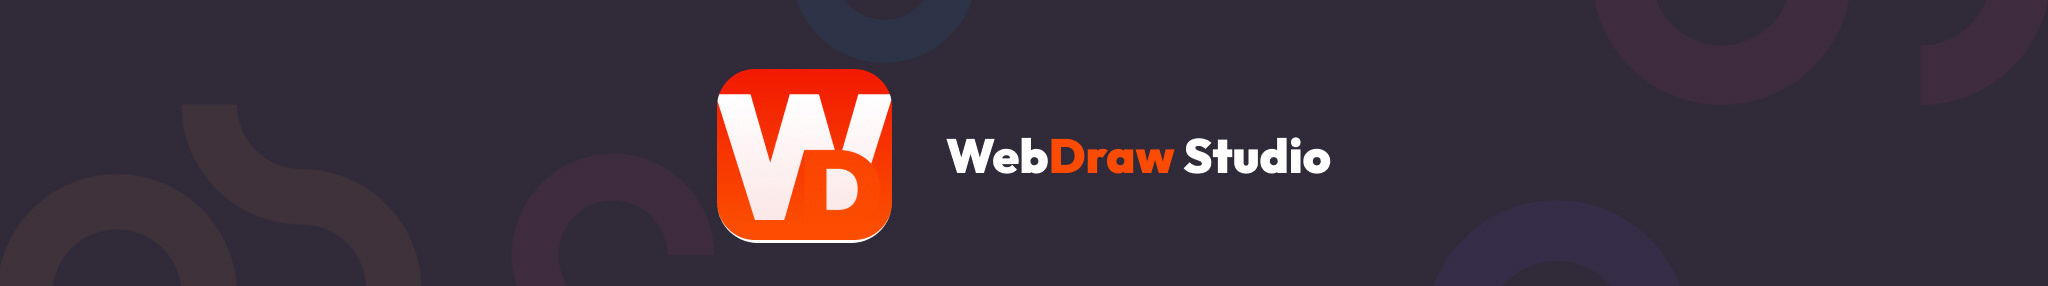 Profil-Banner von WebDraw Studio